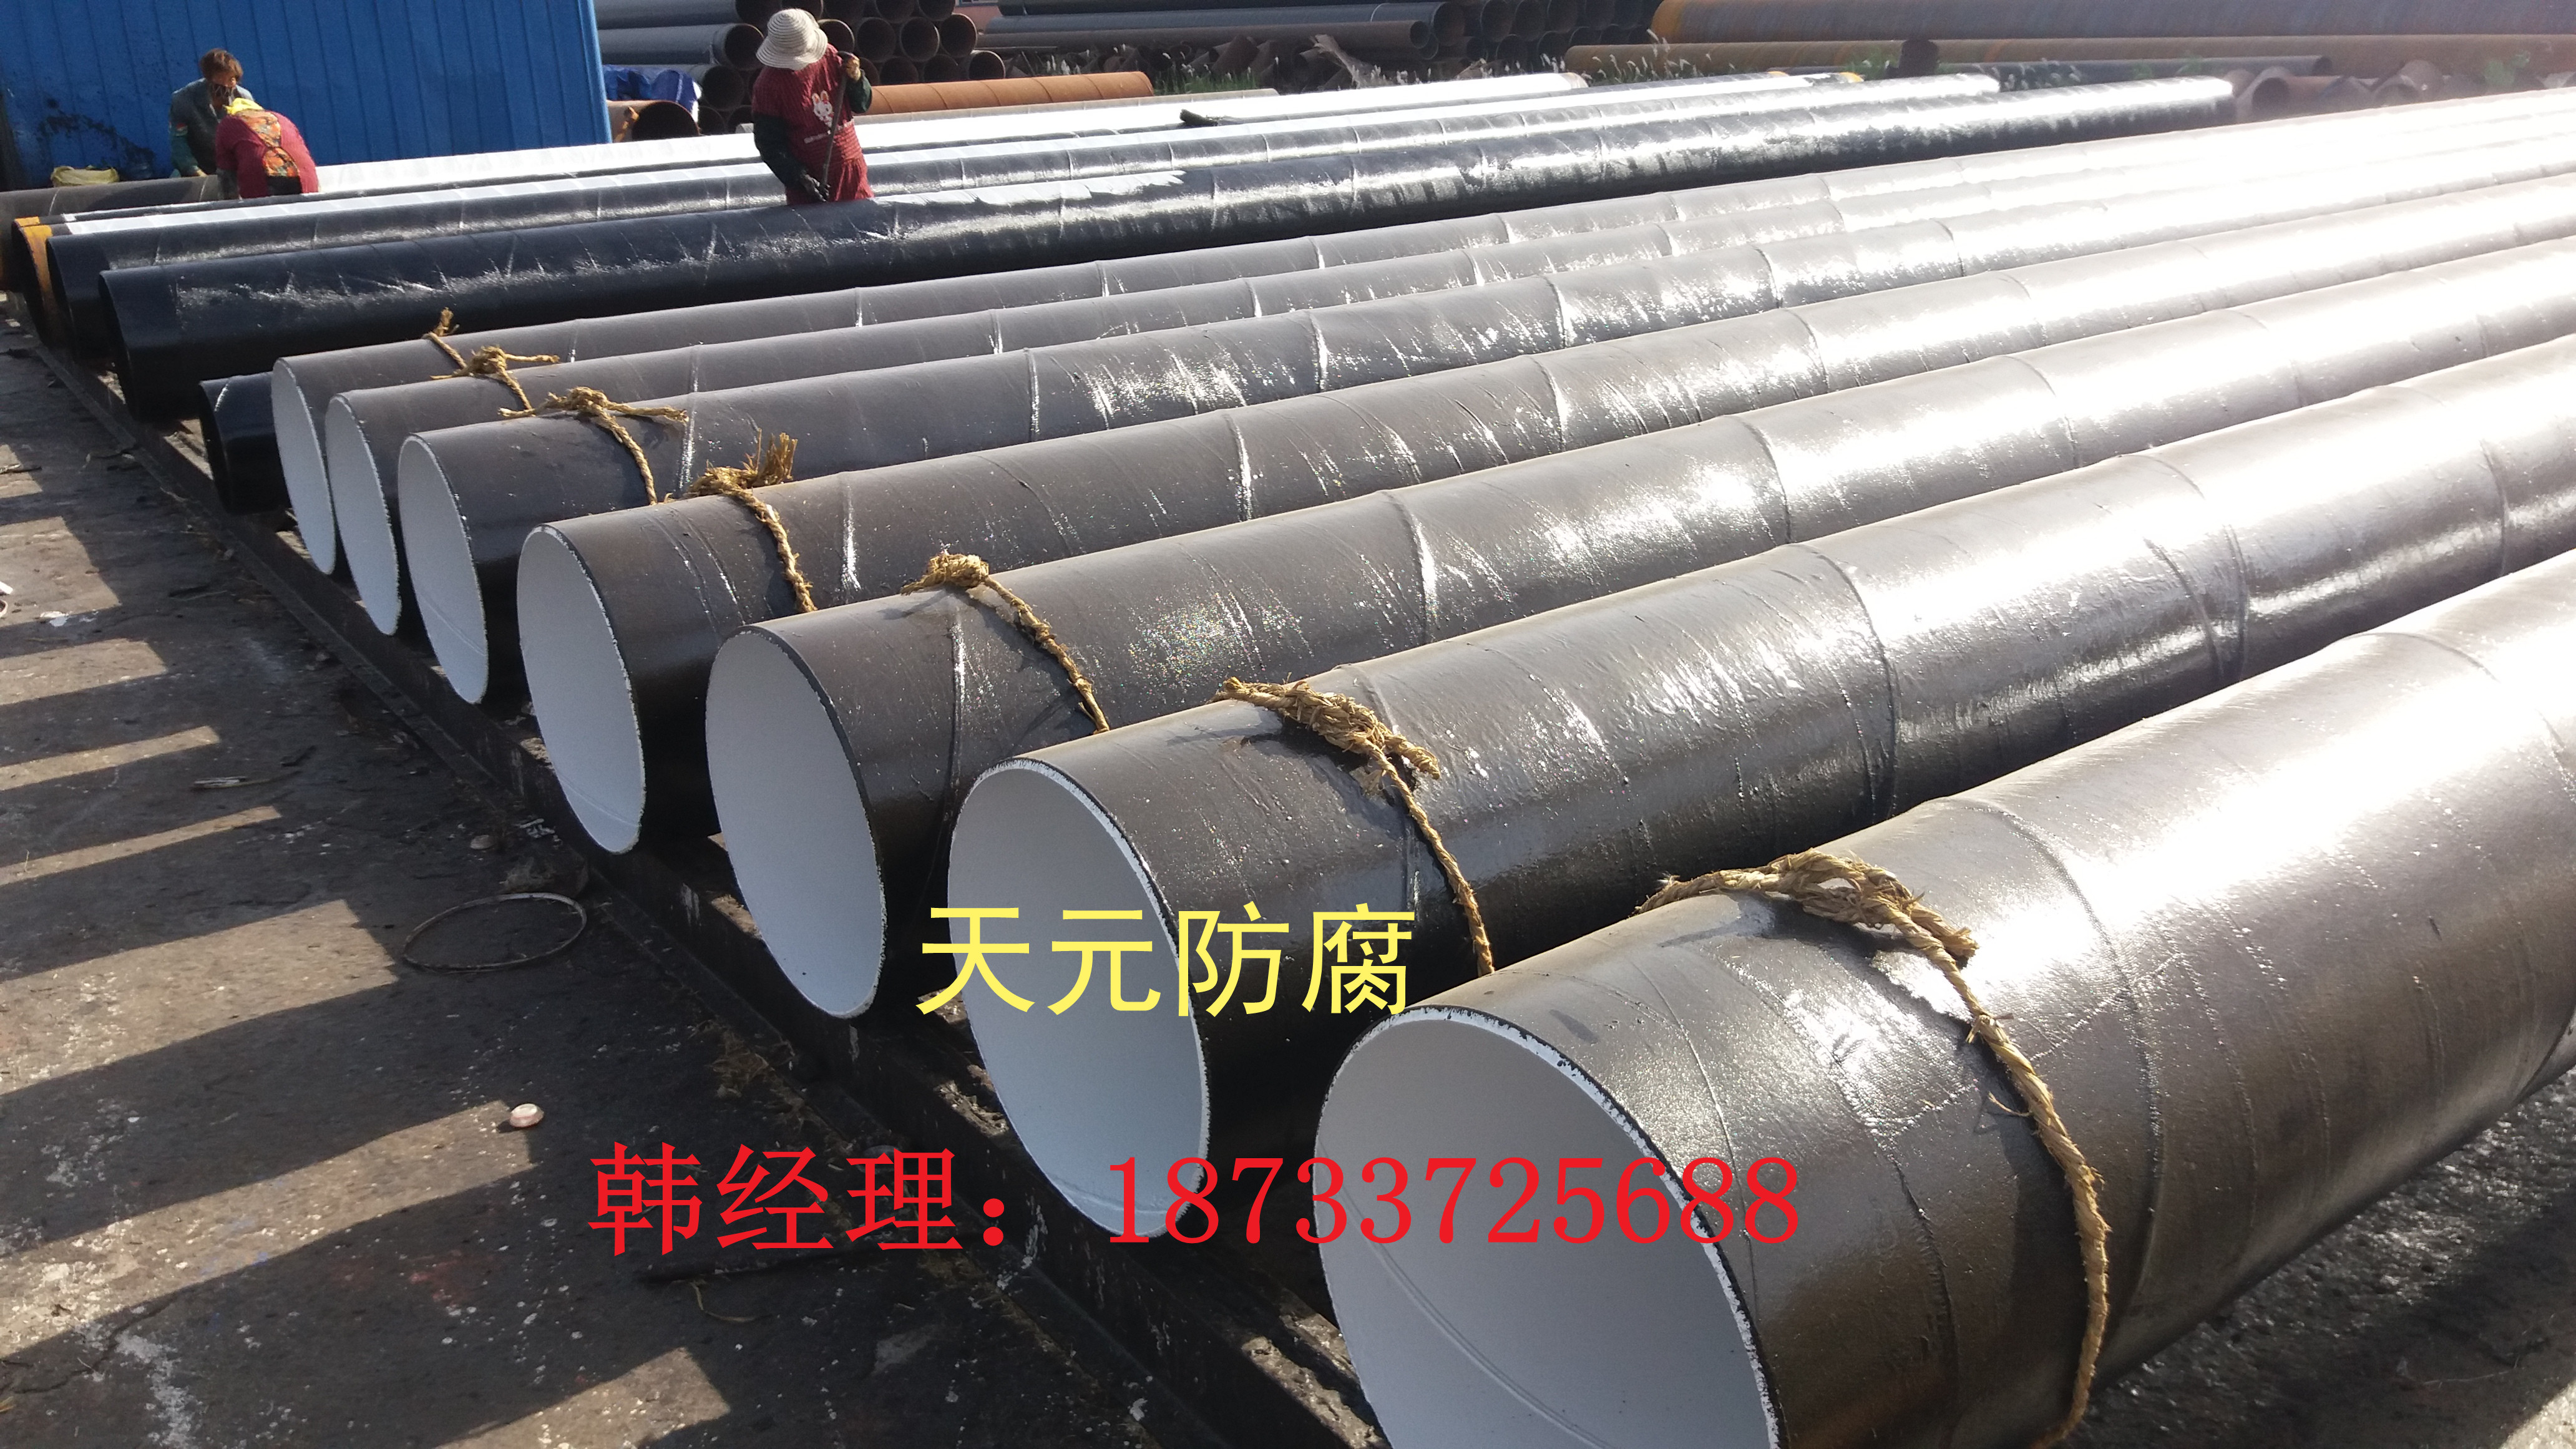 桂林埋地给水钢管生产厂家